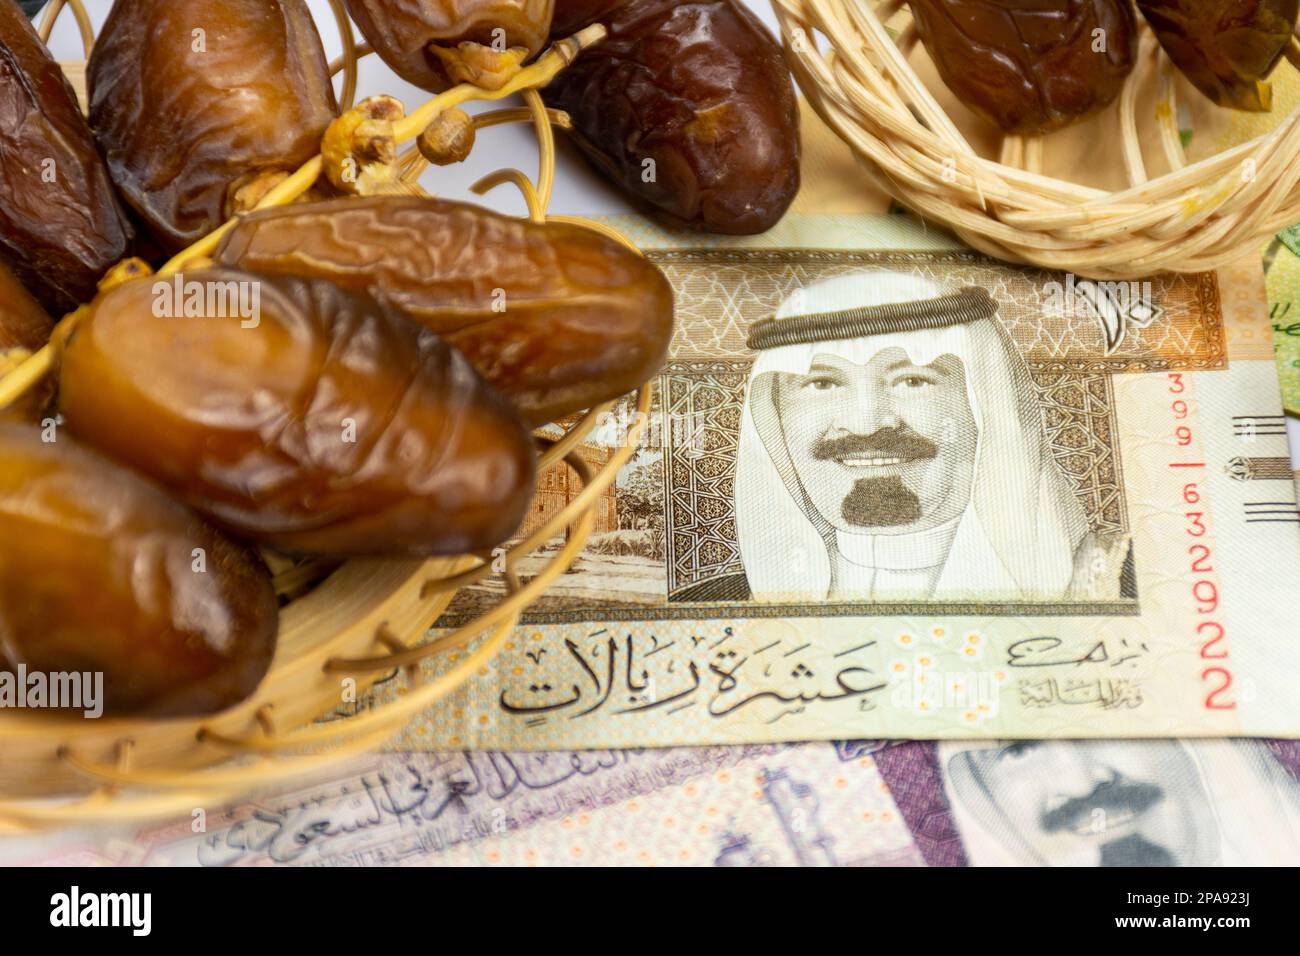 Gros plan des dates royales algériennes sur une plaque en bois. Billets d'argent de l'Arabie Saoudite. Concept de Ramadan. Banque D'Images